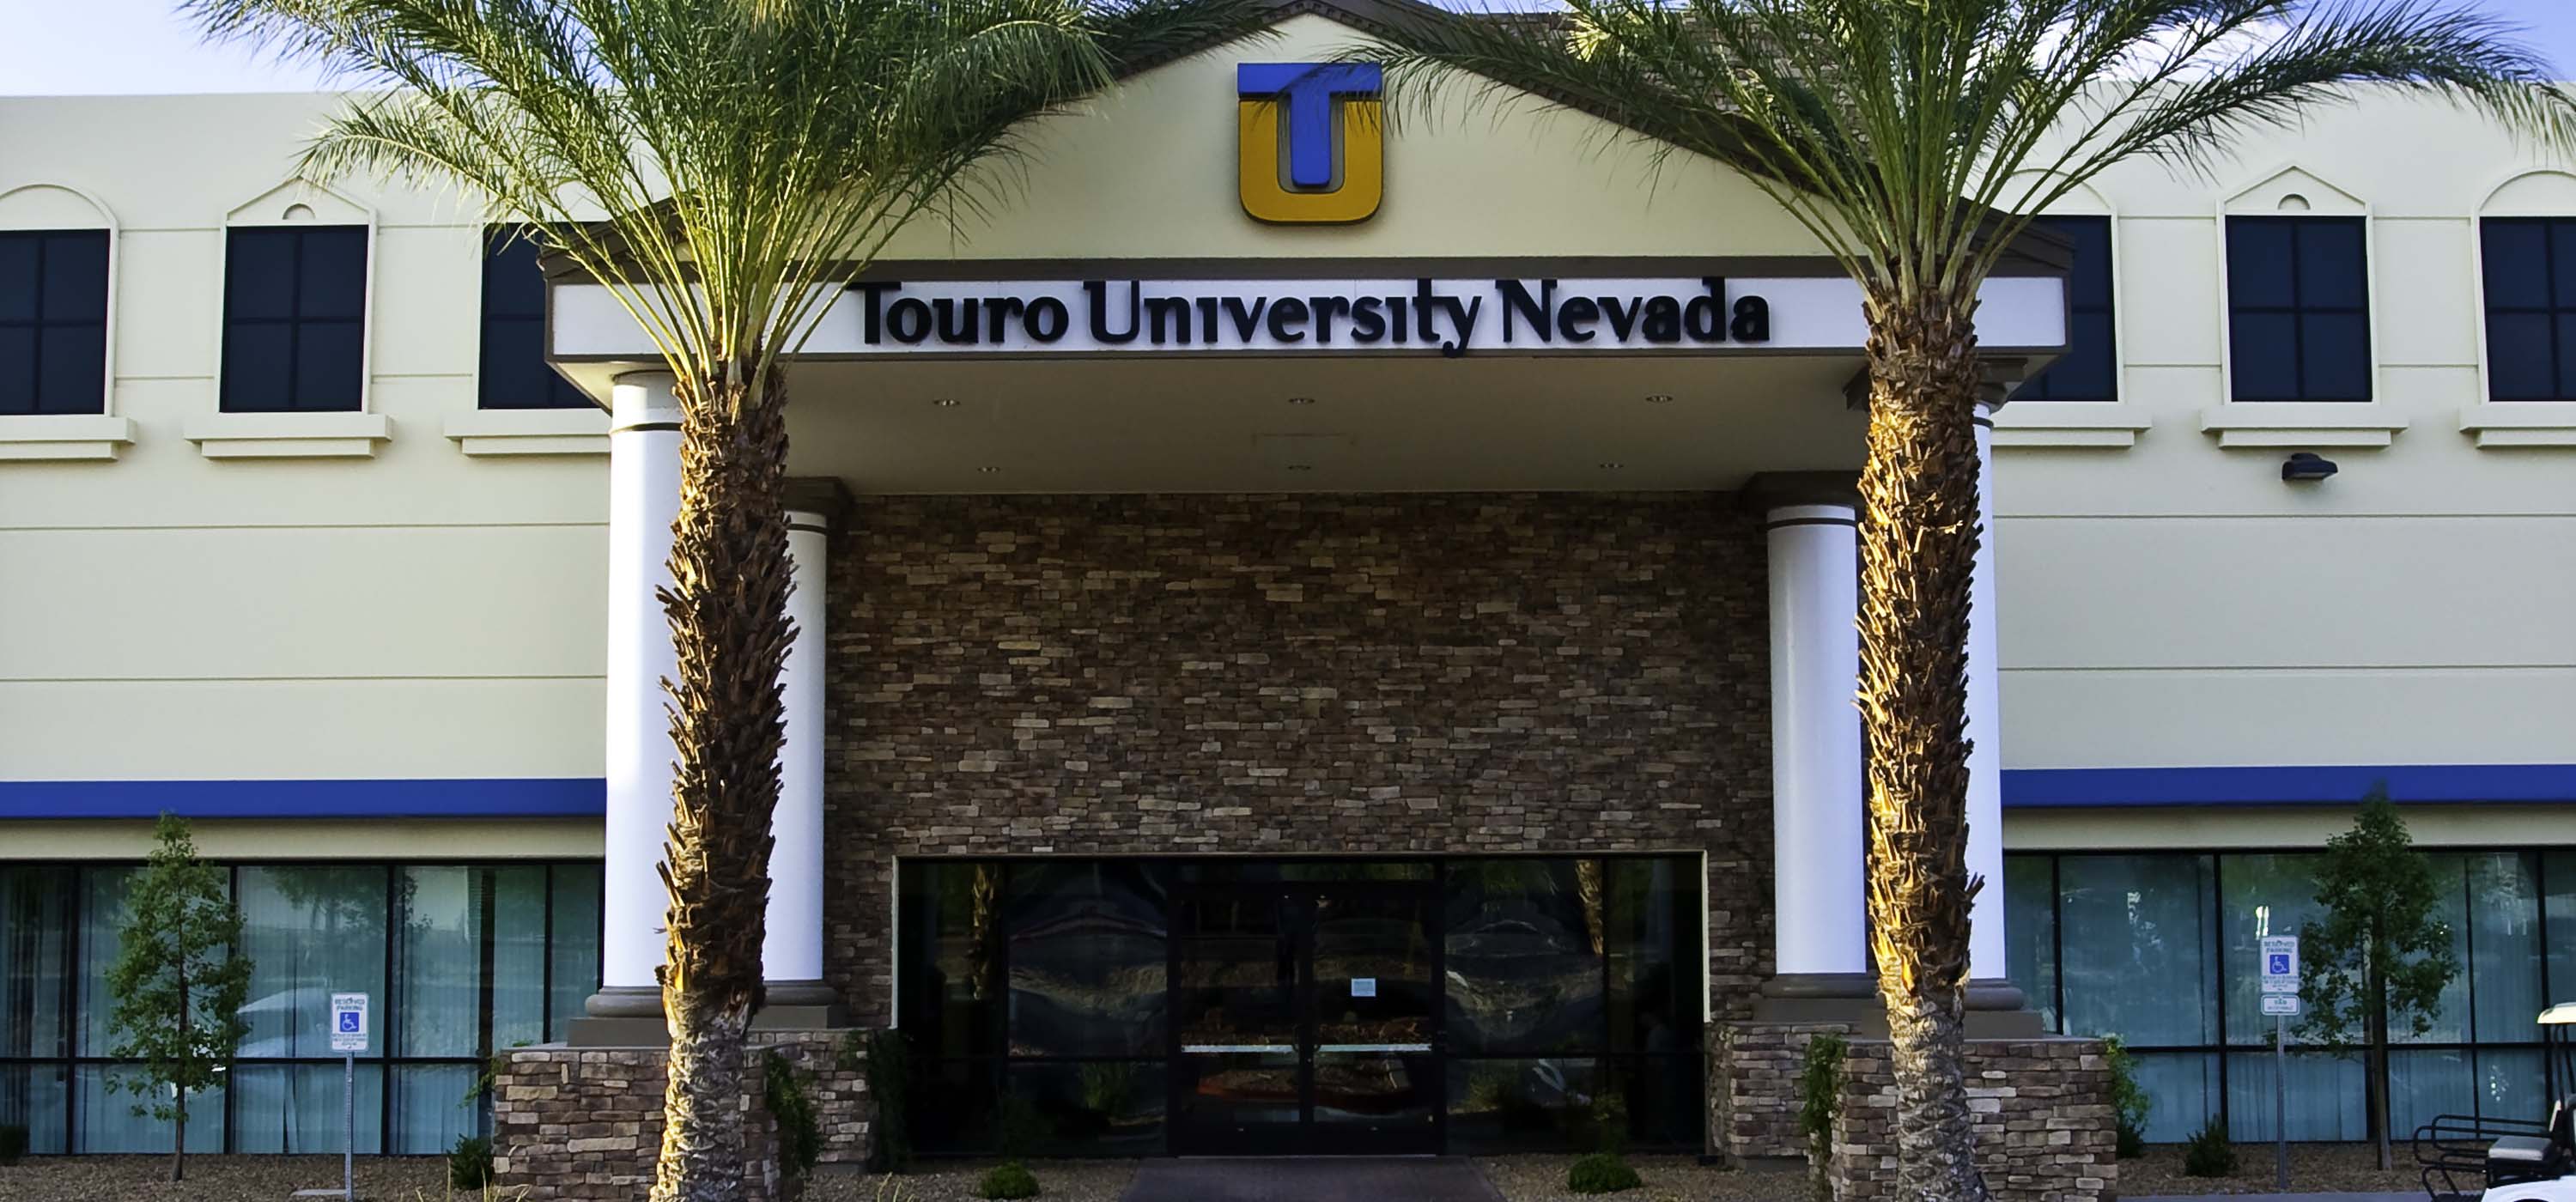 The entrance to Touro Nevada.